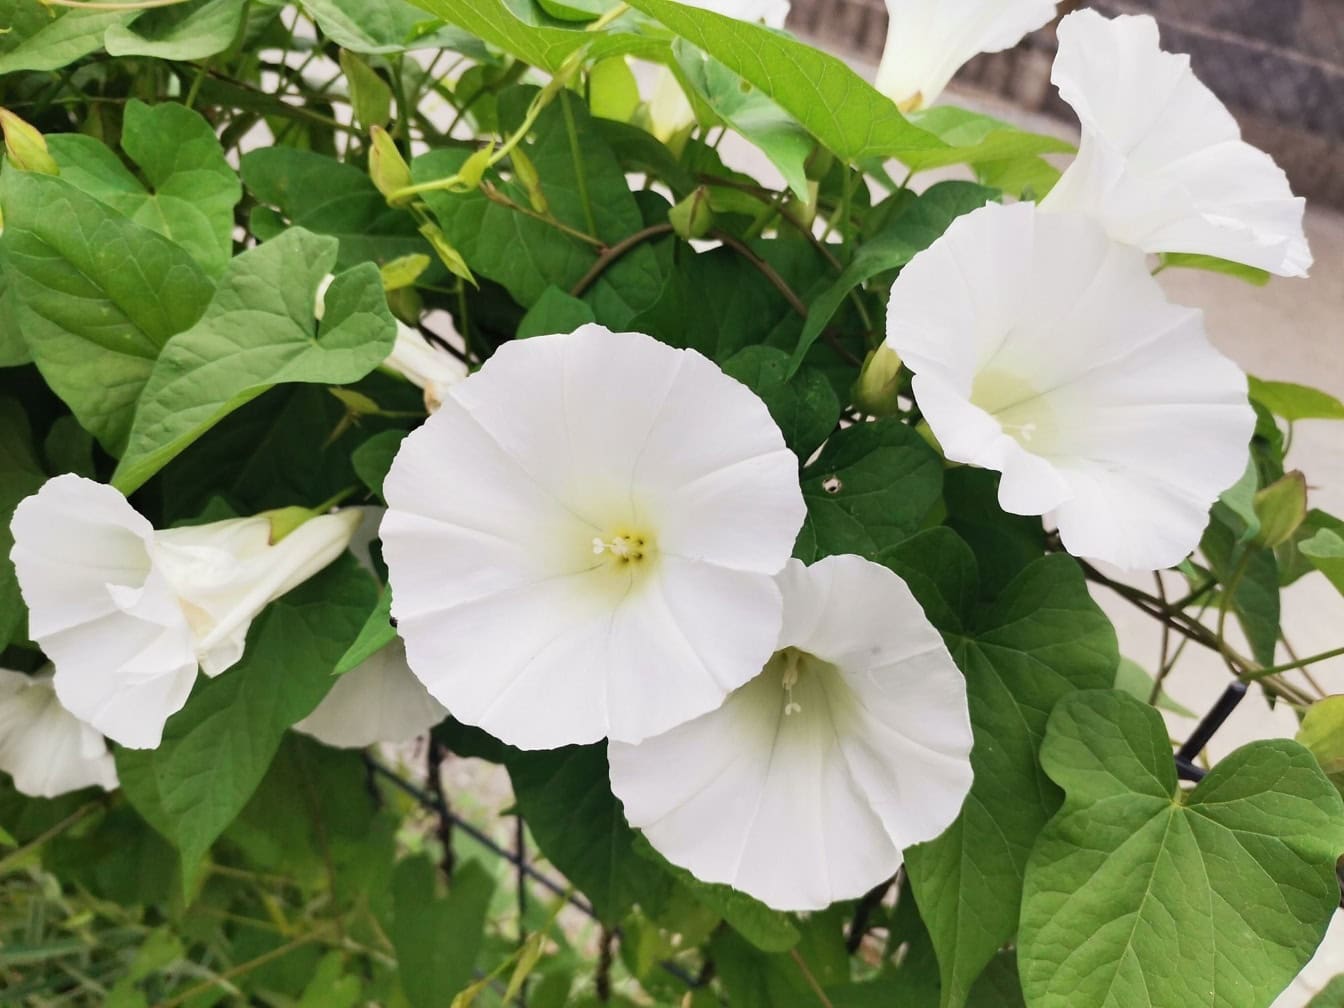 Một bông hoa liên kết lớn với những bông hoa màu trắng (Calystegia silvatica)